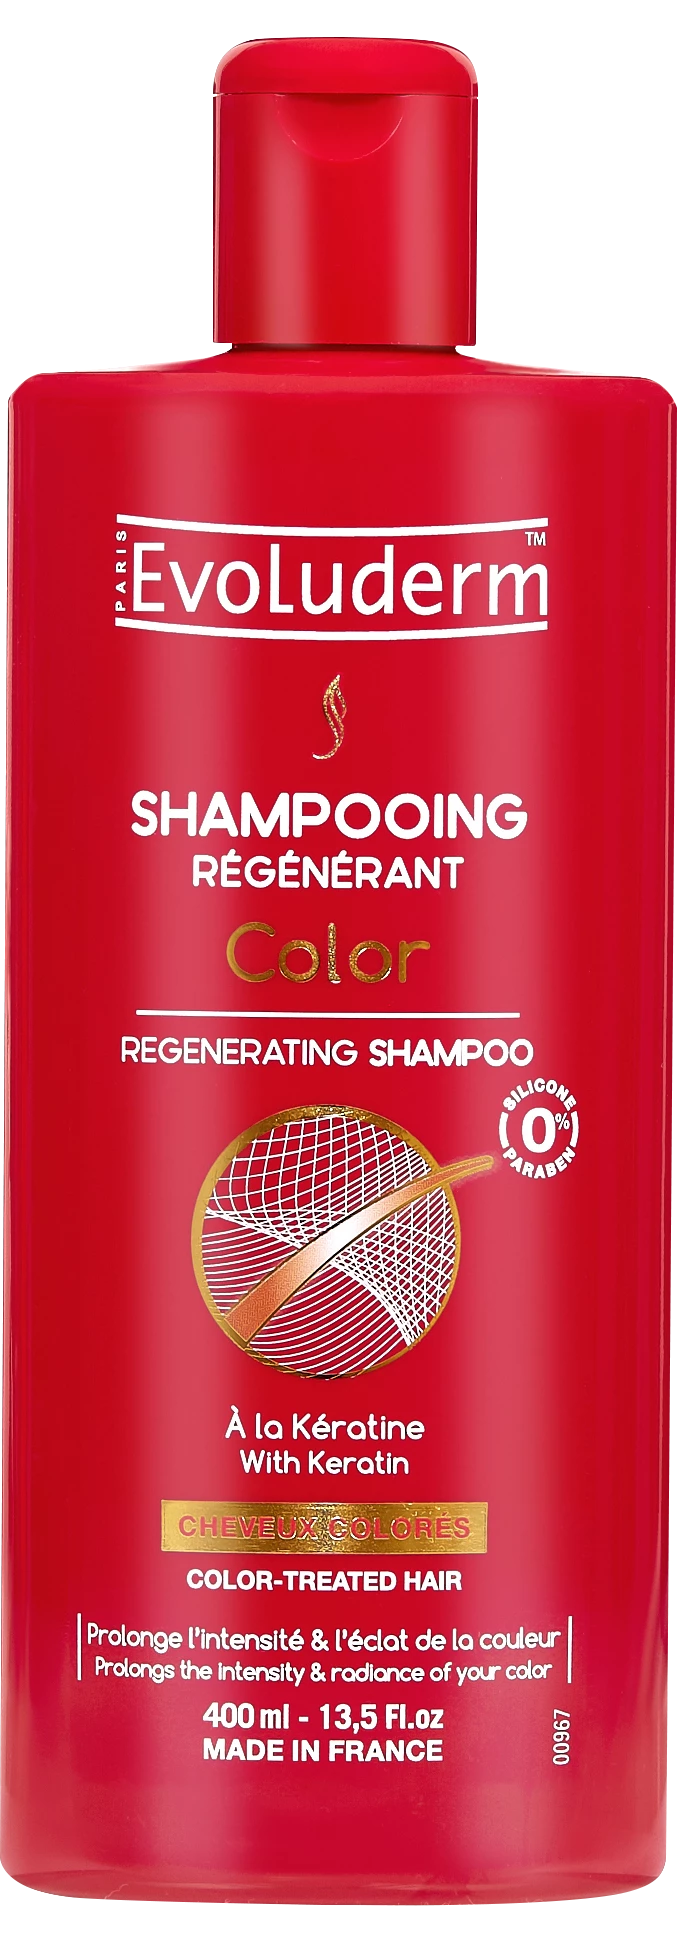 Shampoo Rigenerante Colore, 400ml - EVOLUDERM